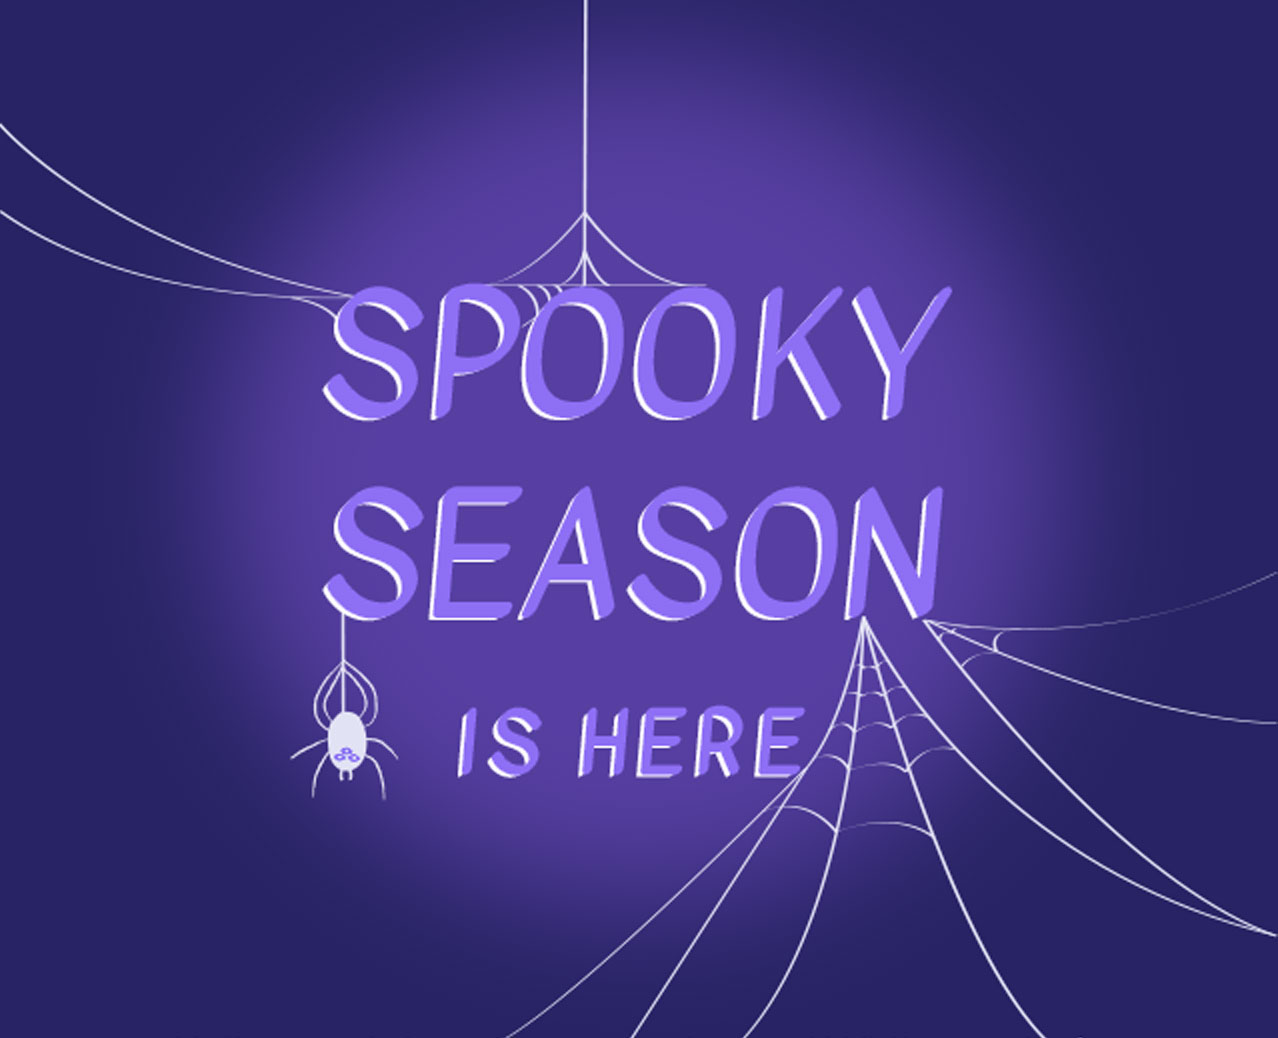 Spooky season is here!